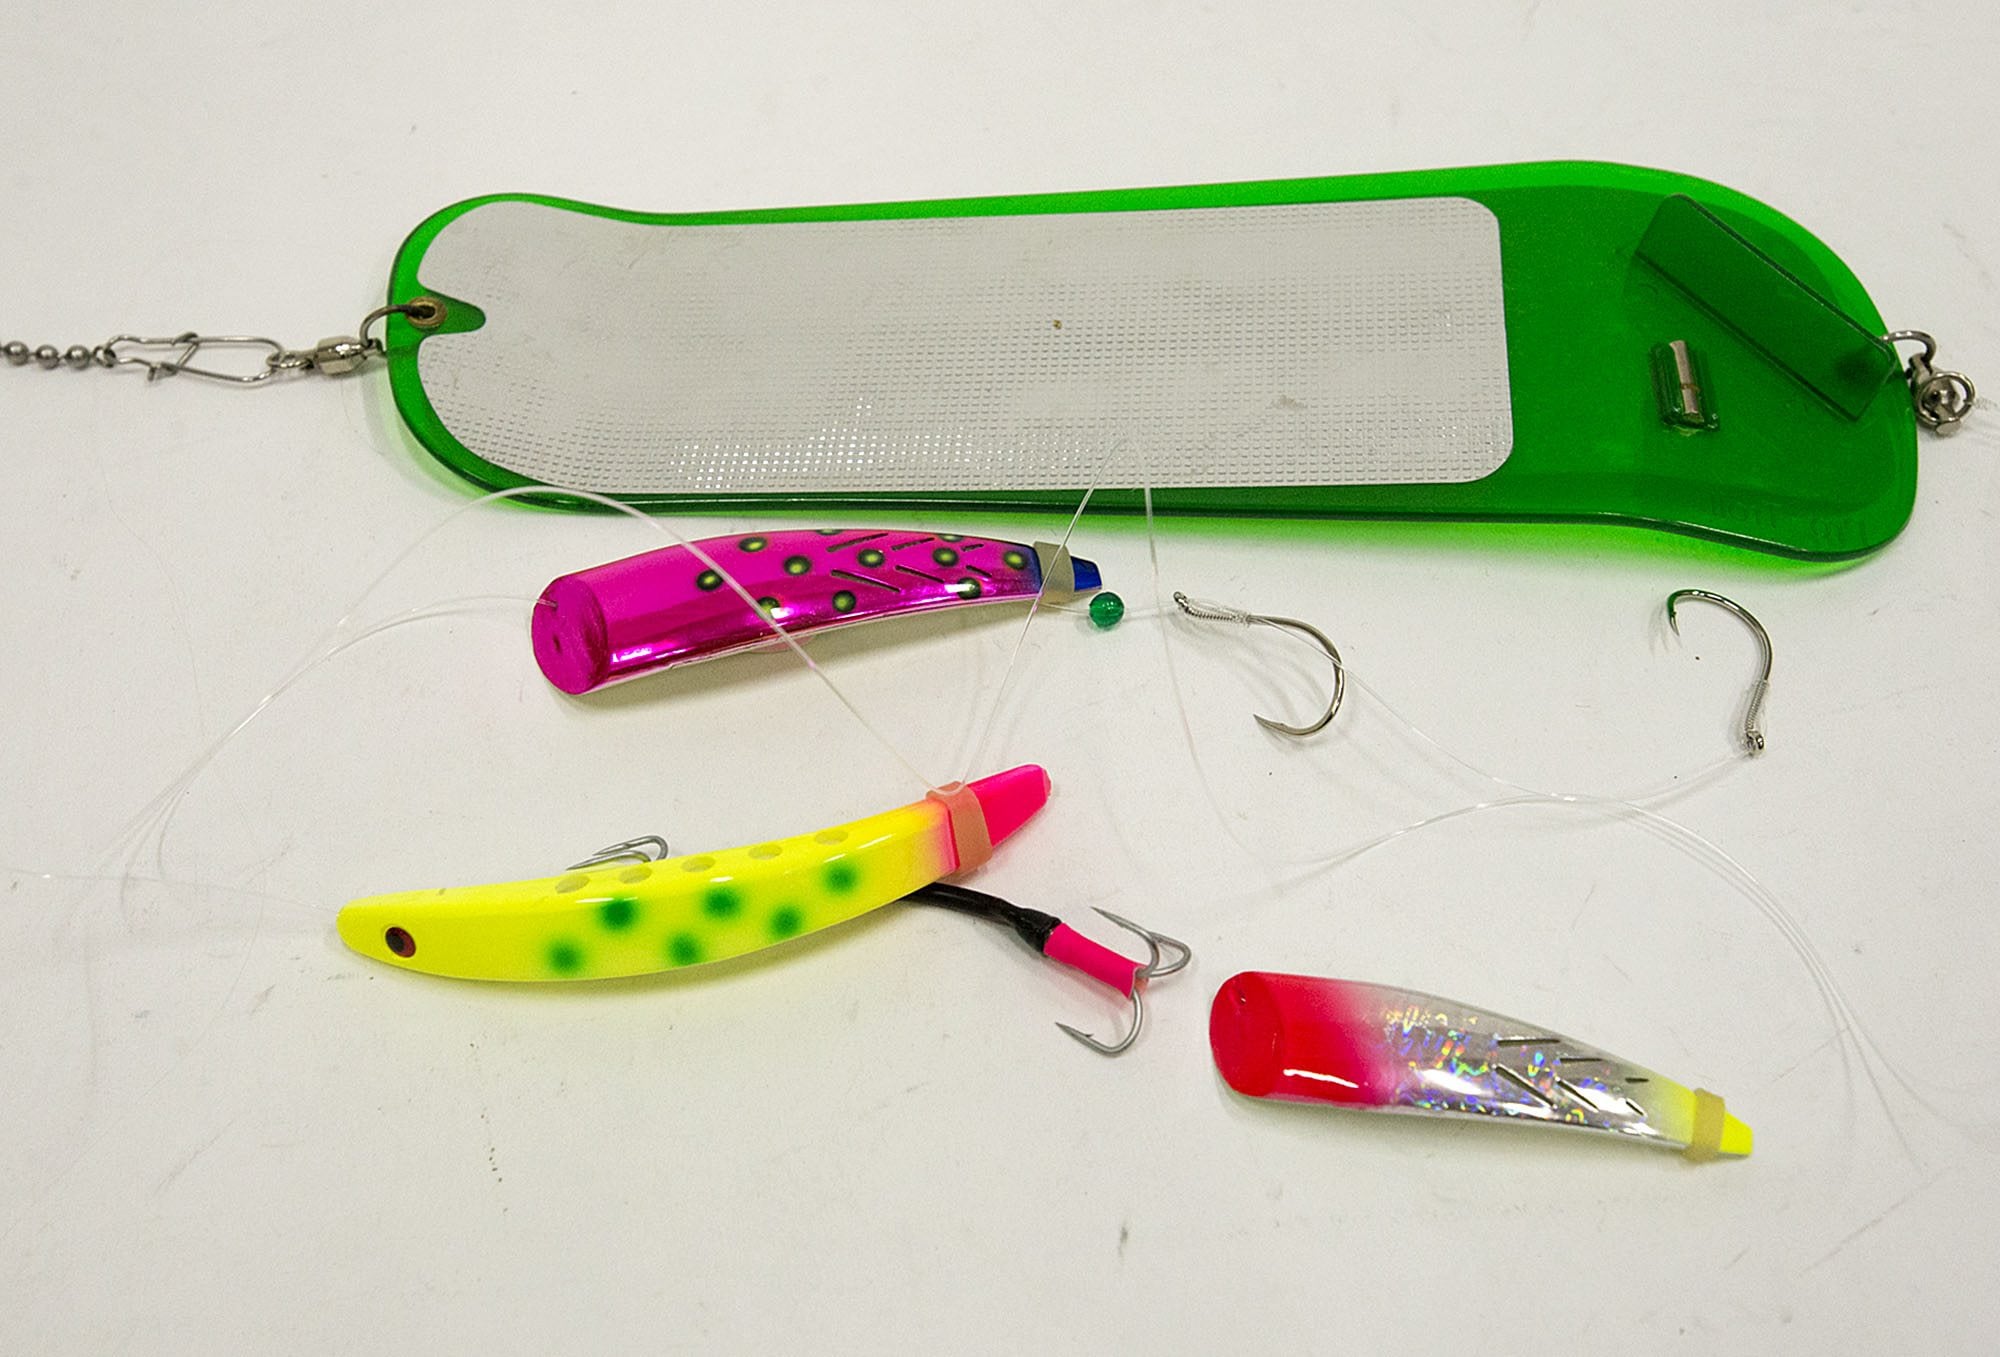 Brads Killer Fishing Gear Super Bait Cut Plug and Mini Cut Plug